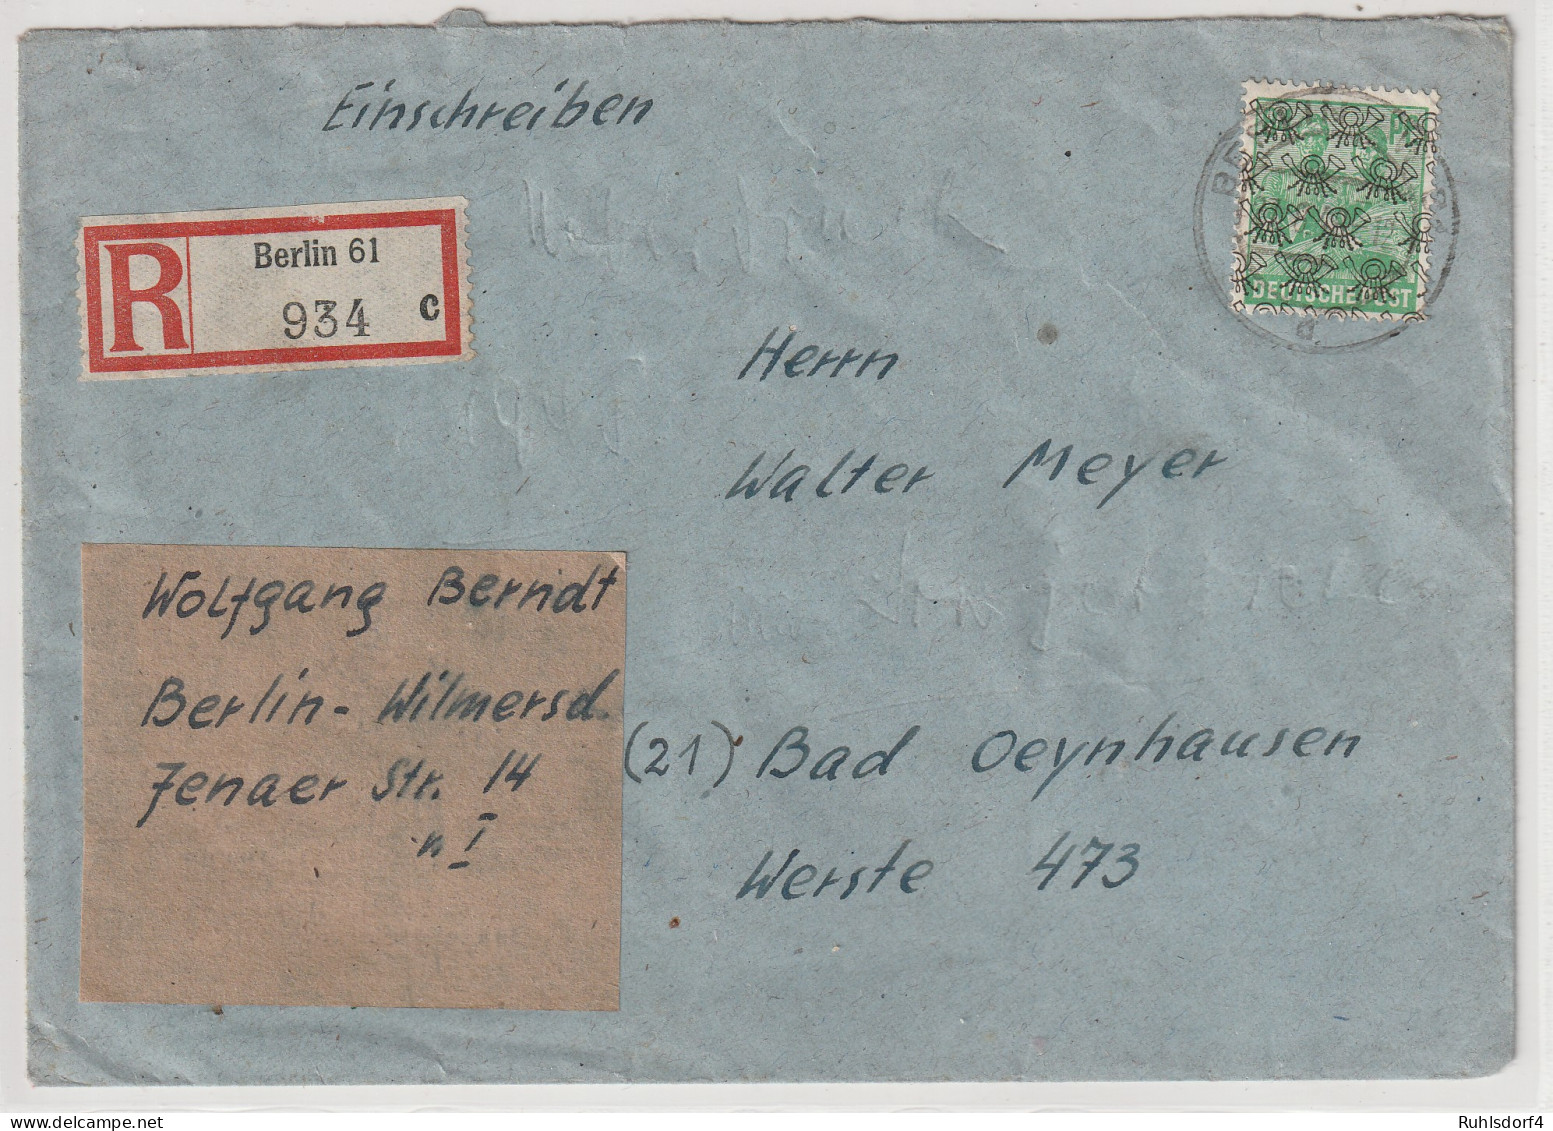 Berlin: 84 Pfg. Posthorn Netz Auf R-Fern-Brief In WBerlin Verwendet, Gepr. - Briefe U. Dokumente